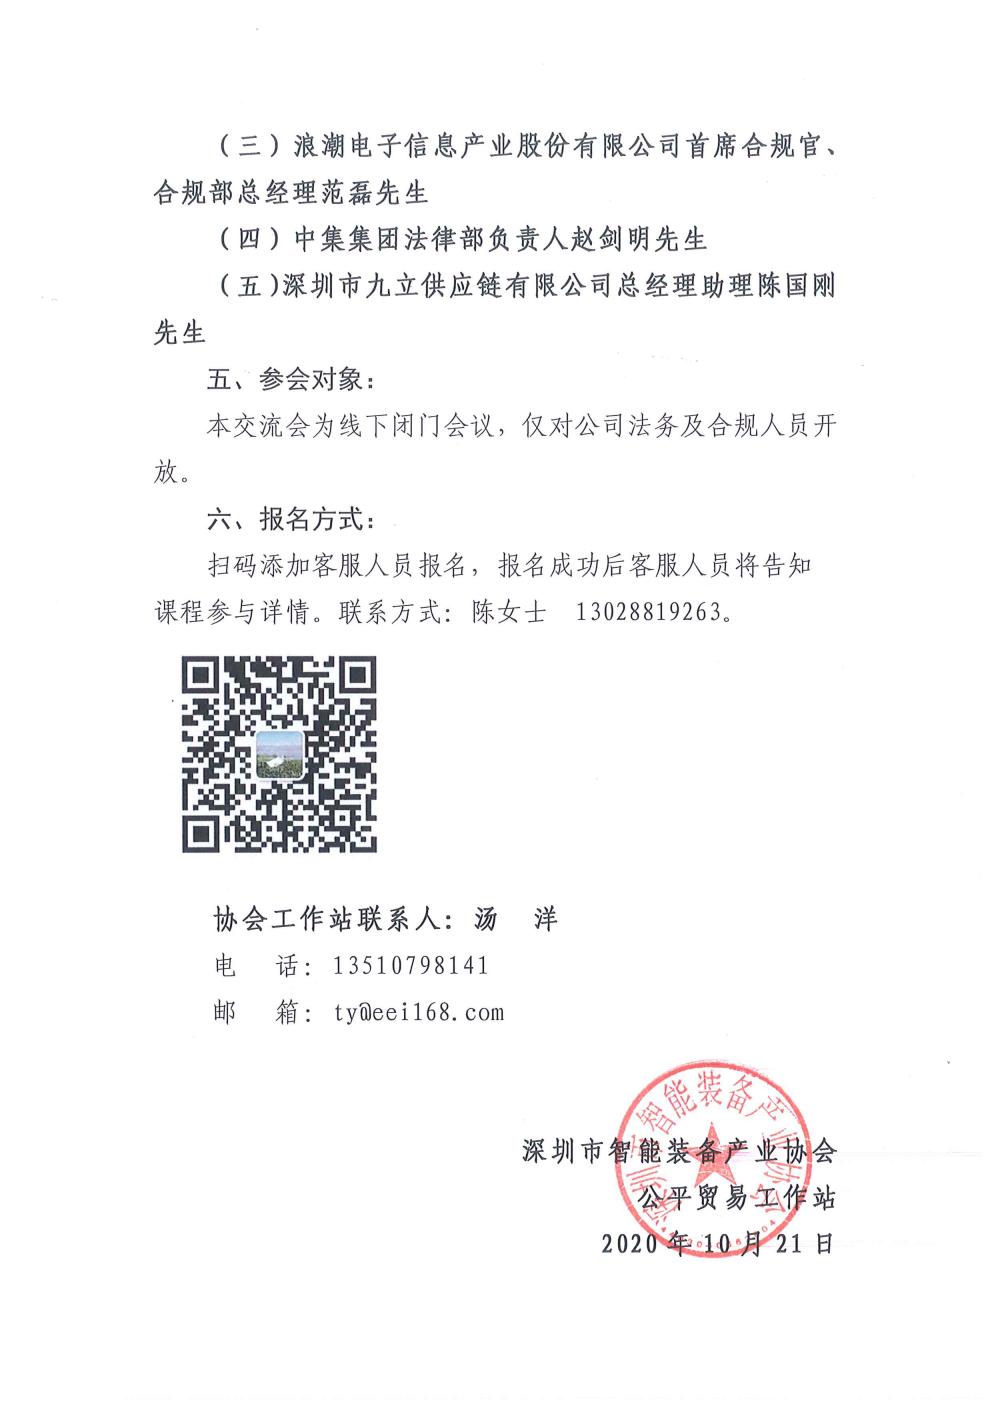 转发深圳市公平贸易促进署关于企业合规体系交流会的通知(图2)